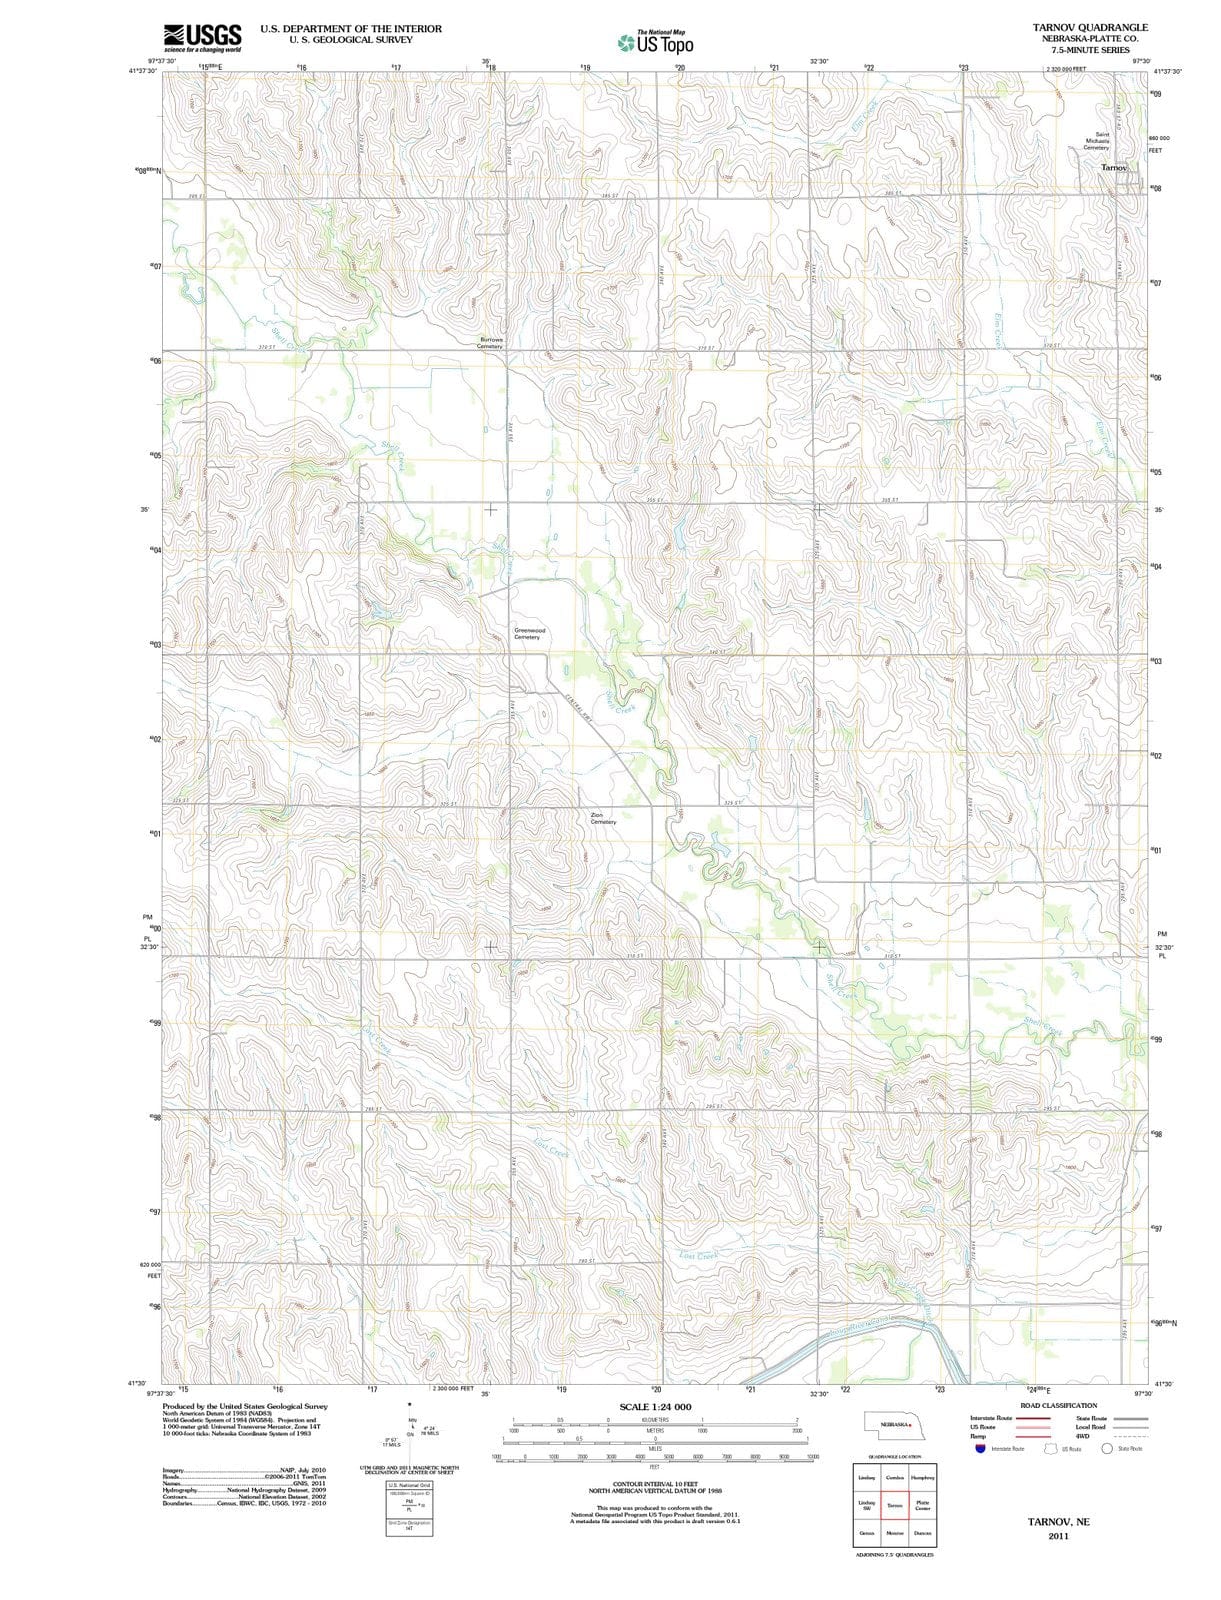 2011 Tarnov, NE - Nebraska - USGS Topographic Map